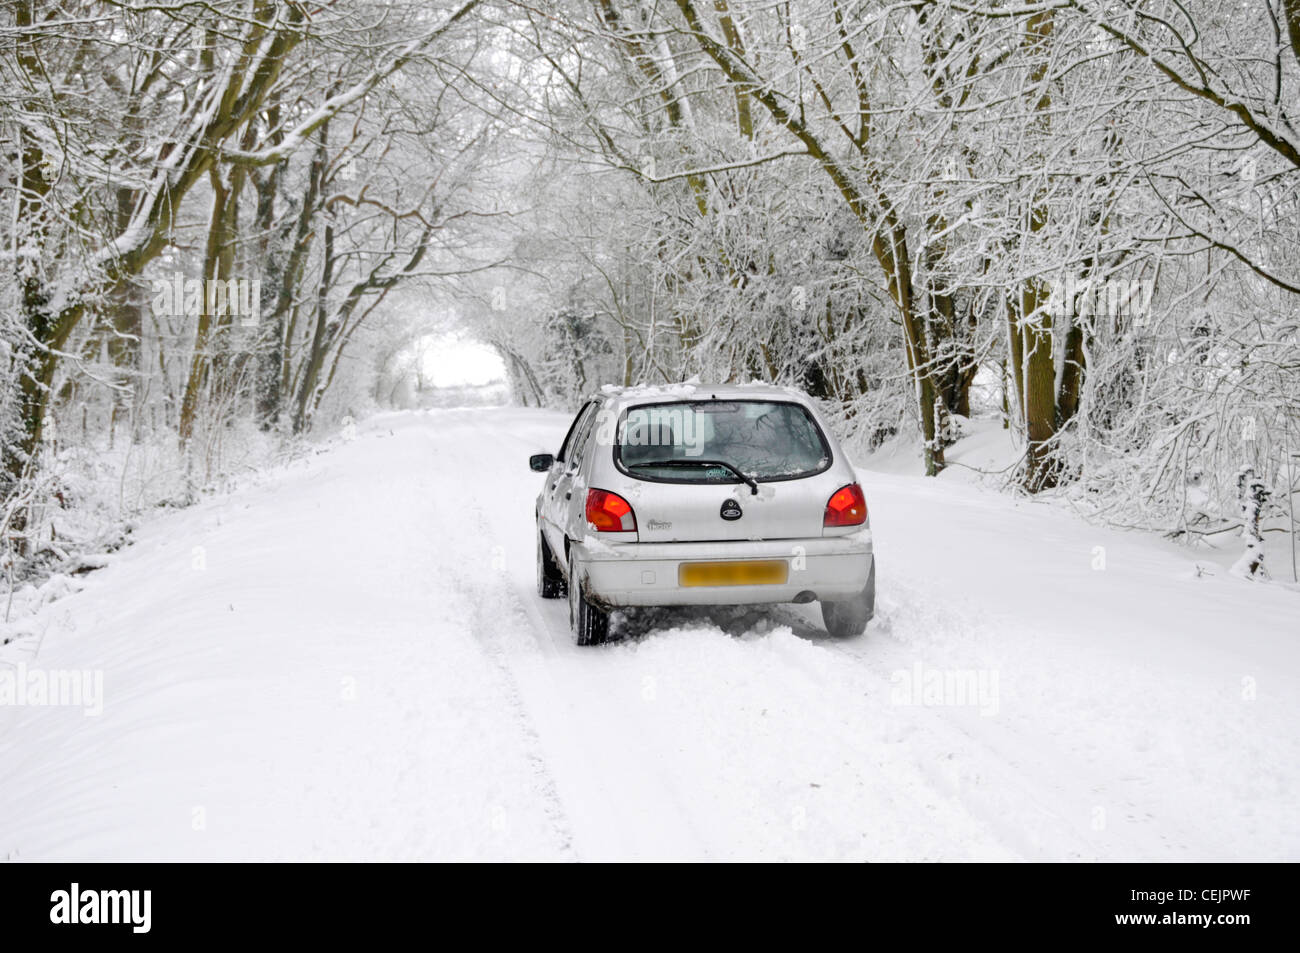 Schnee Szene Ford Fiesta Auto auf Landstraße Lane unter Tunnel der schneebedeckte Bäume im Winter wonderland Brentwood Essex England Großbritannien Stockfoto